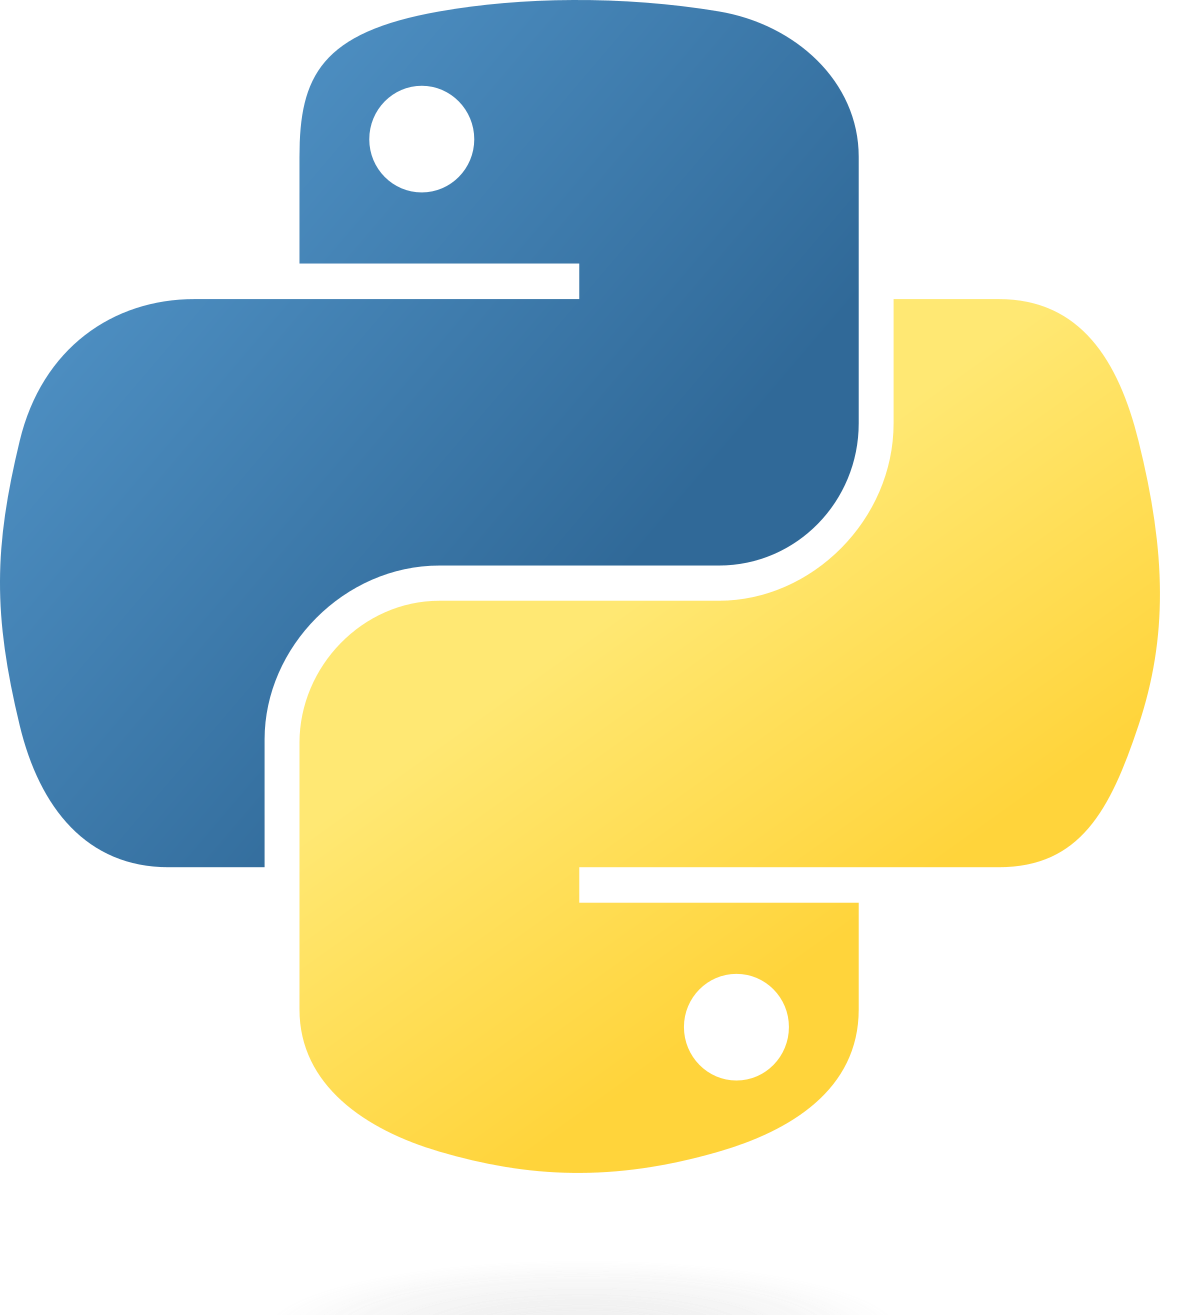 Python logo Journey as a Software Developer